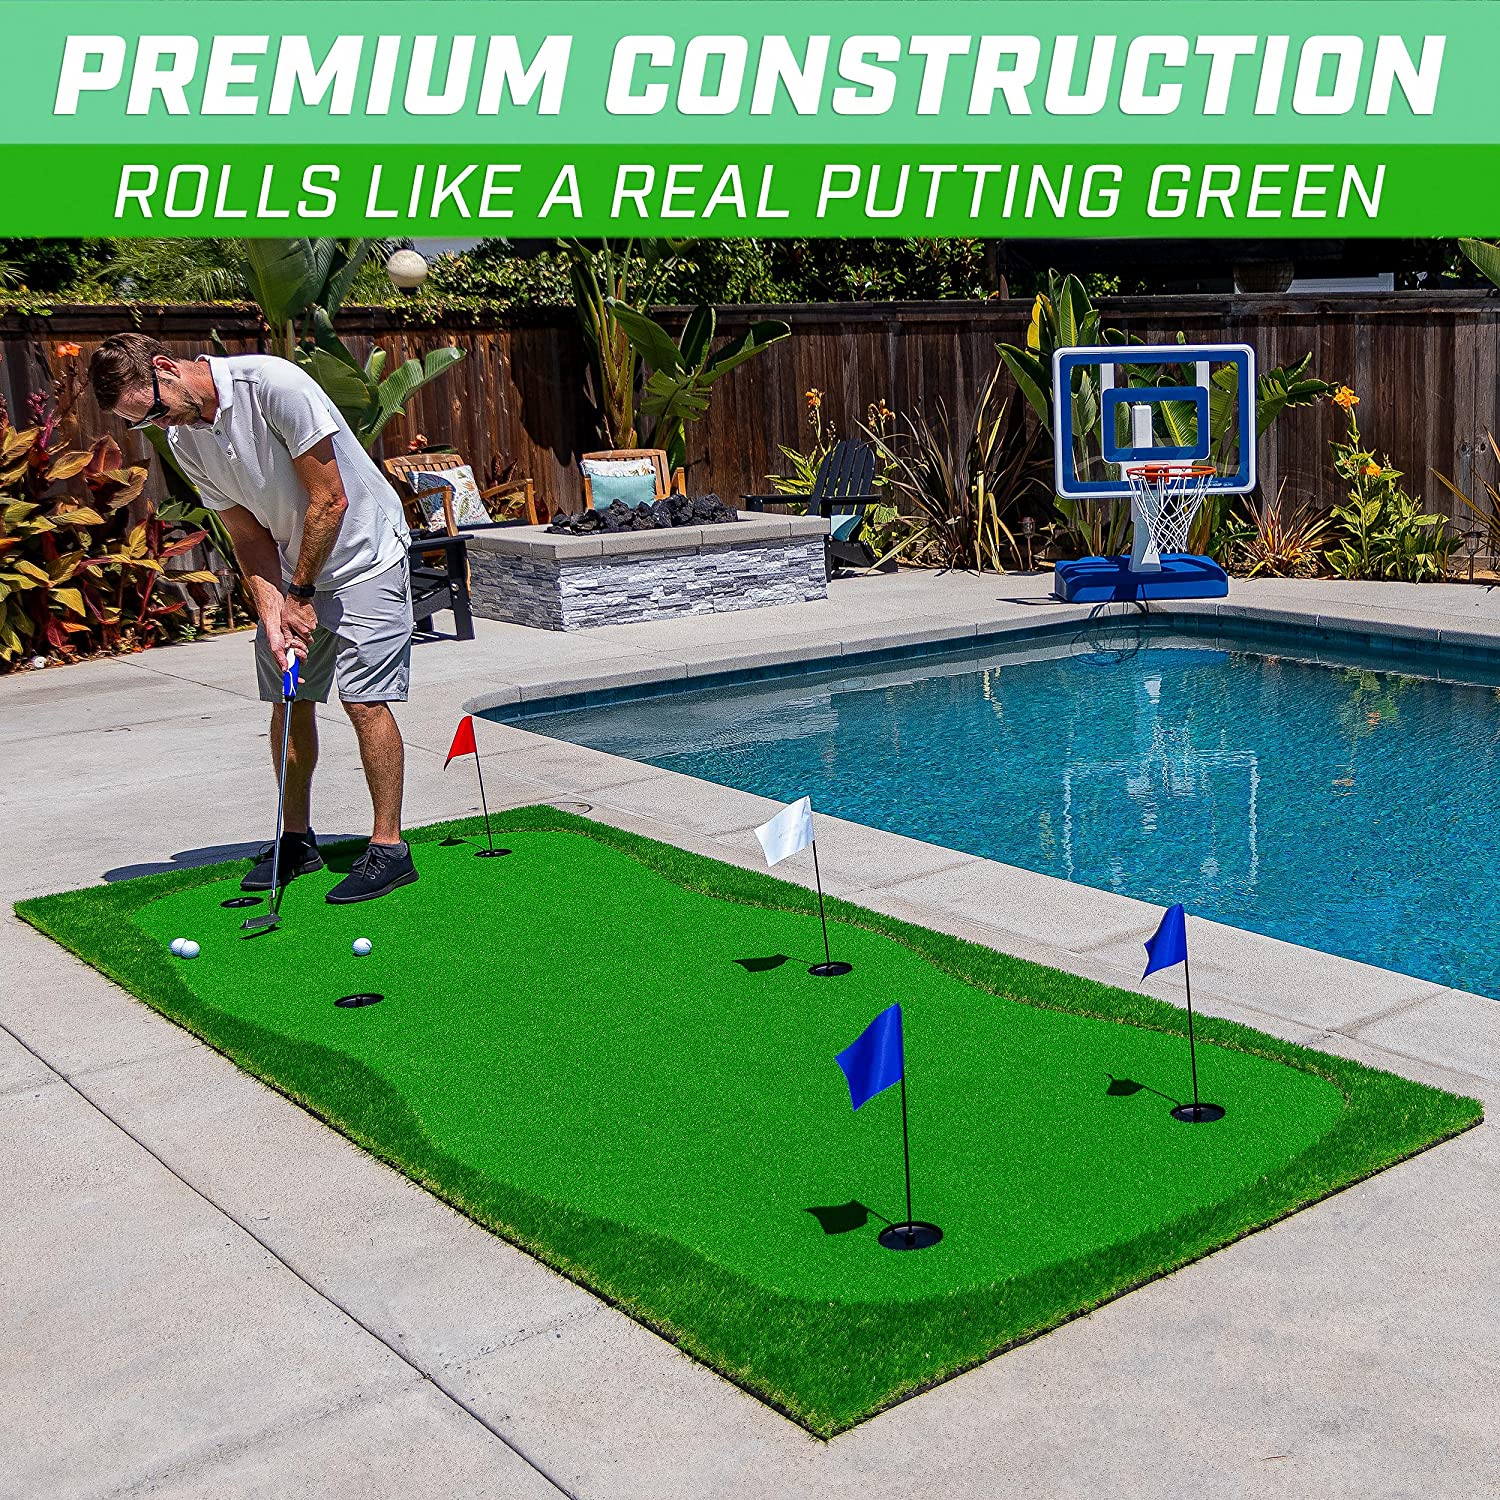 Bigger 12'x5' Golf Putting Greens for Indoor & Outdoor Putting Practice